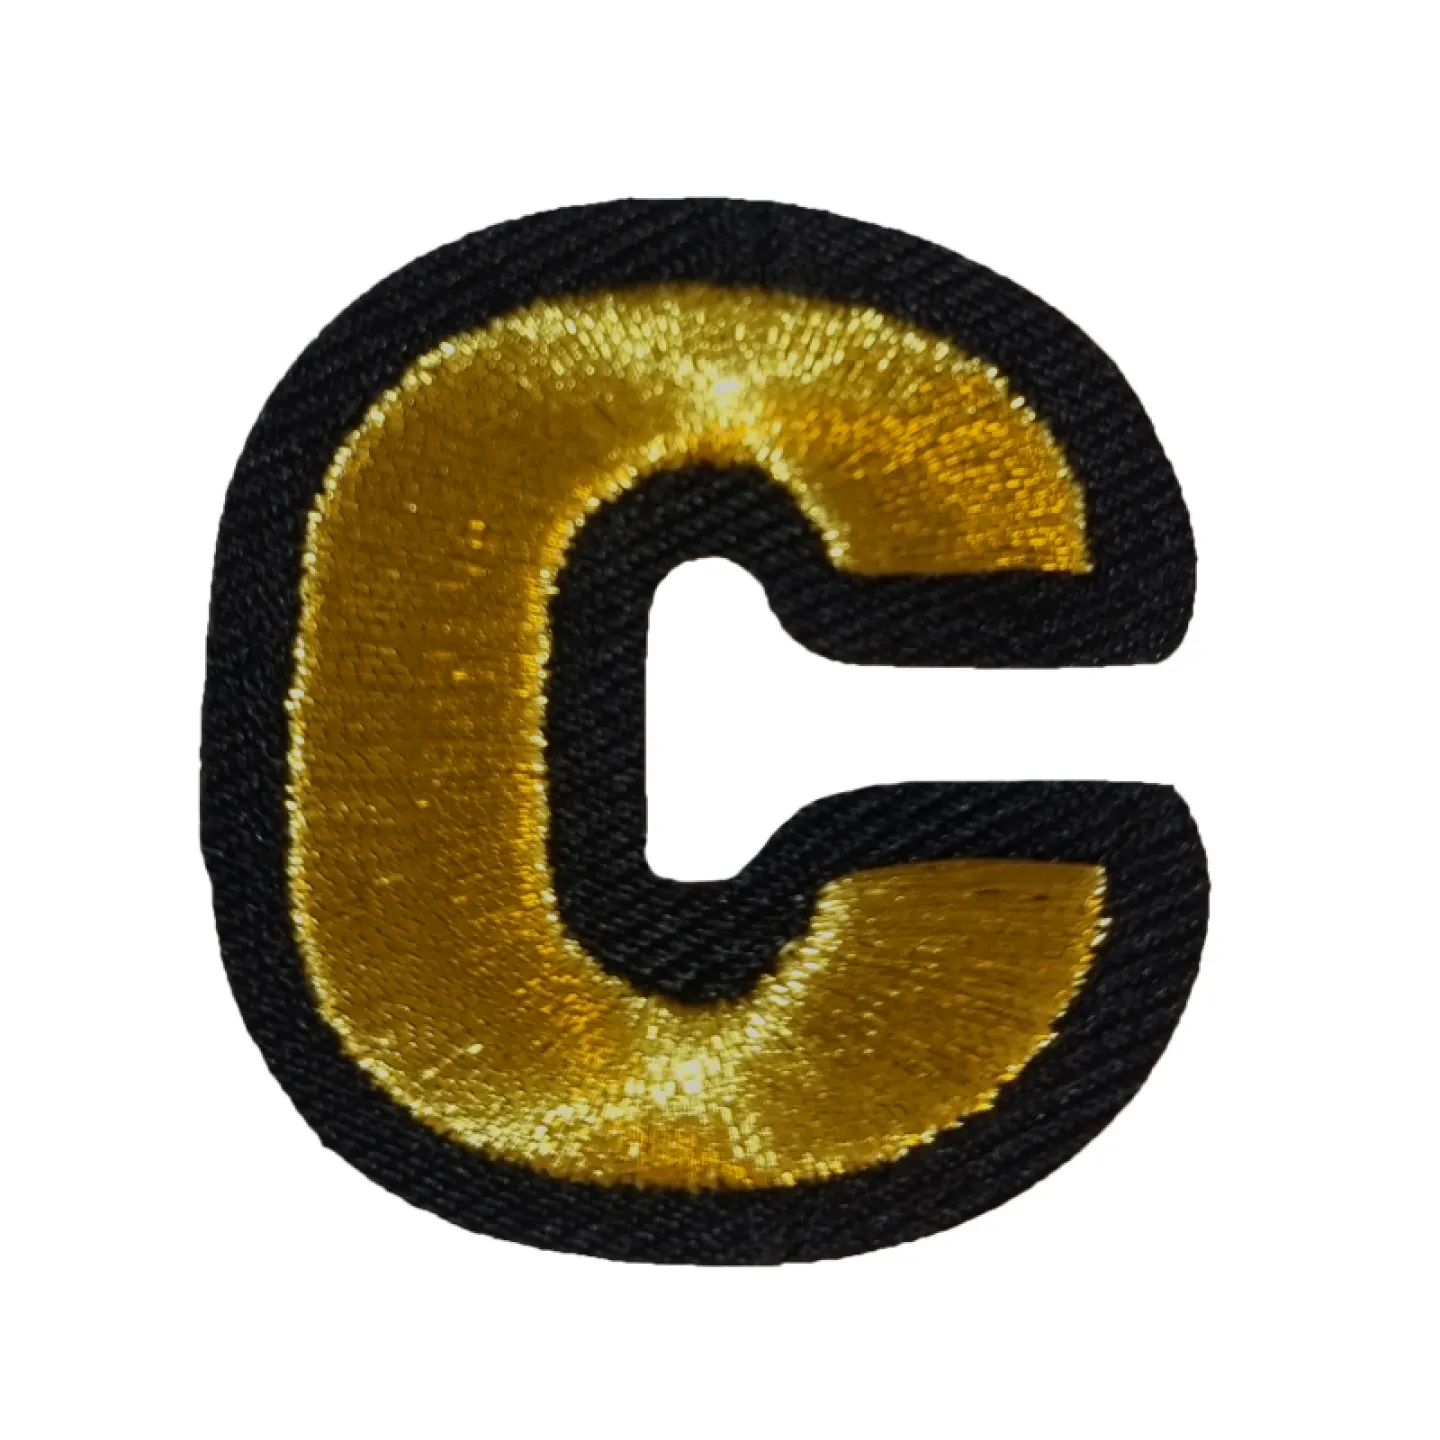 Kruikenstad embleem gouden letter C goedkoop.